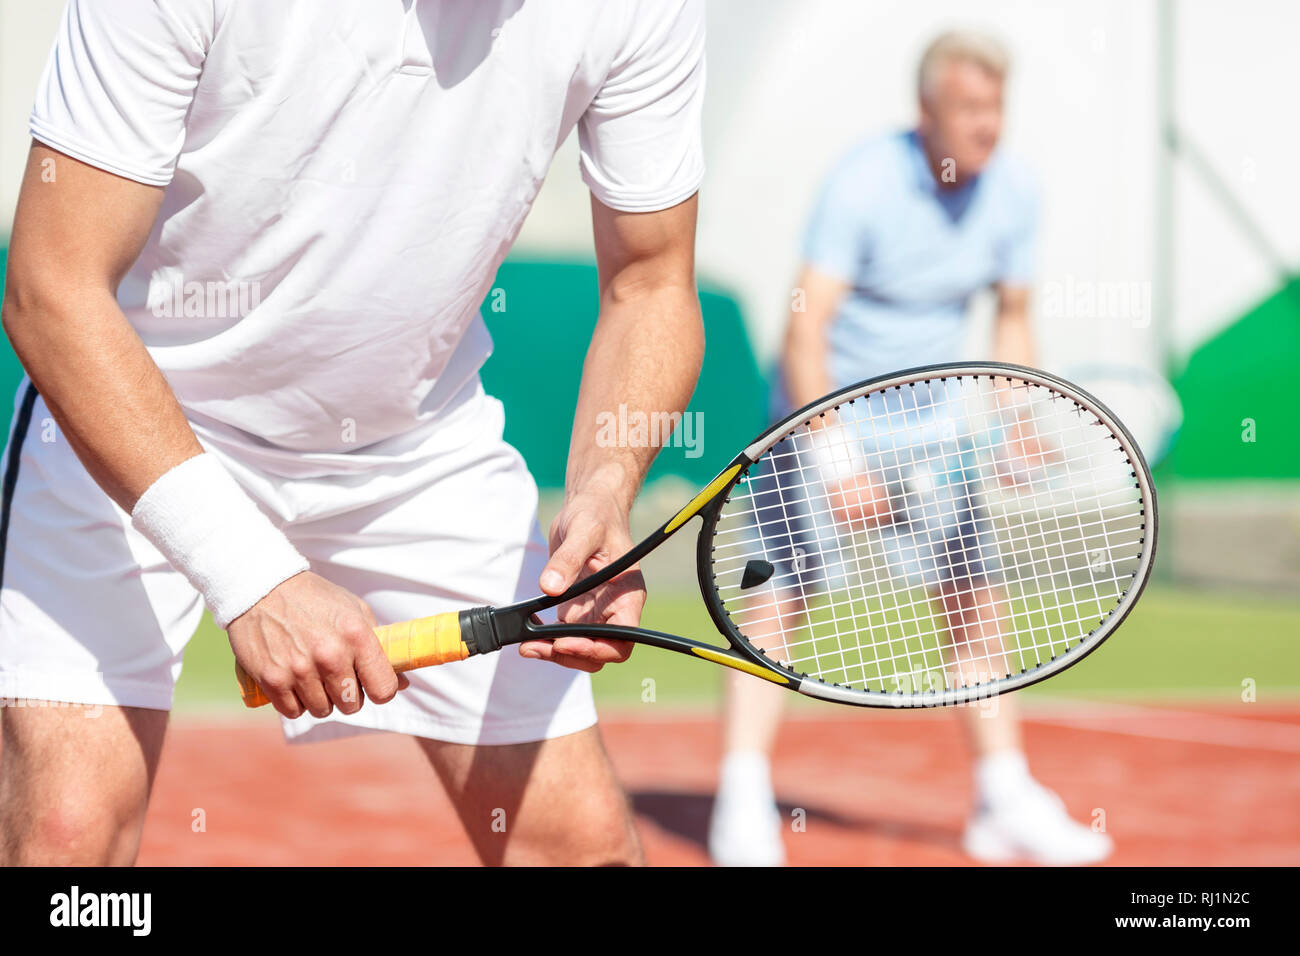 Sezione mediana dell'uomo in piedi con la racchetta da tennis contro un amico a giocare raddoppia la corrispondenza su corte Foto Stock